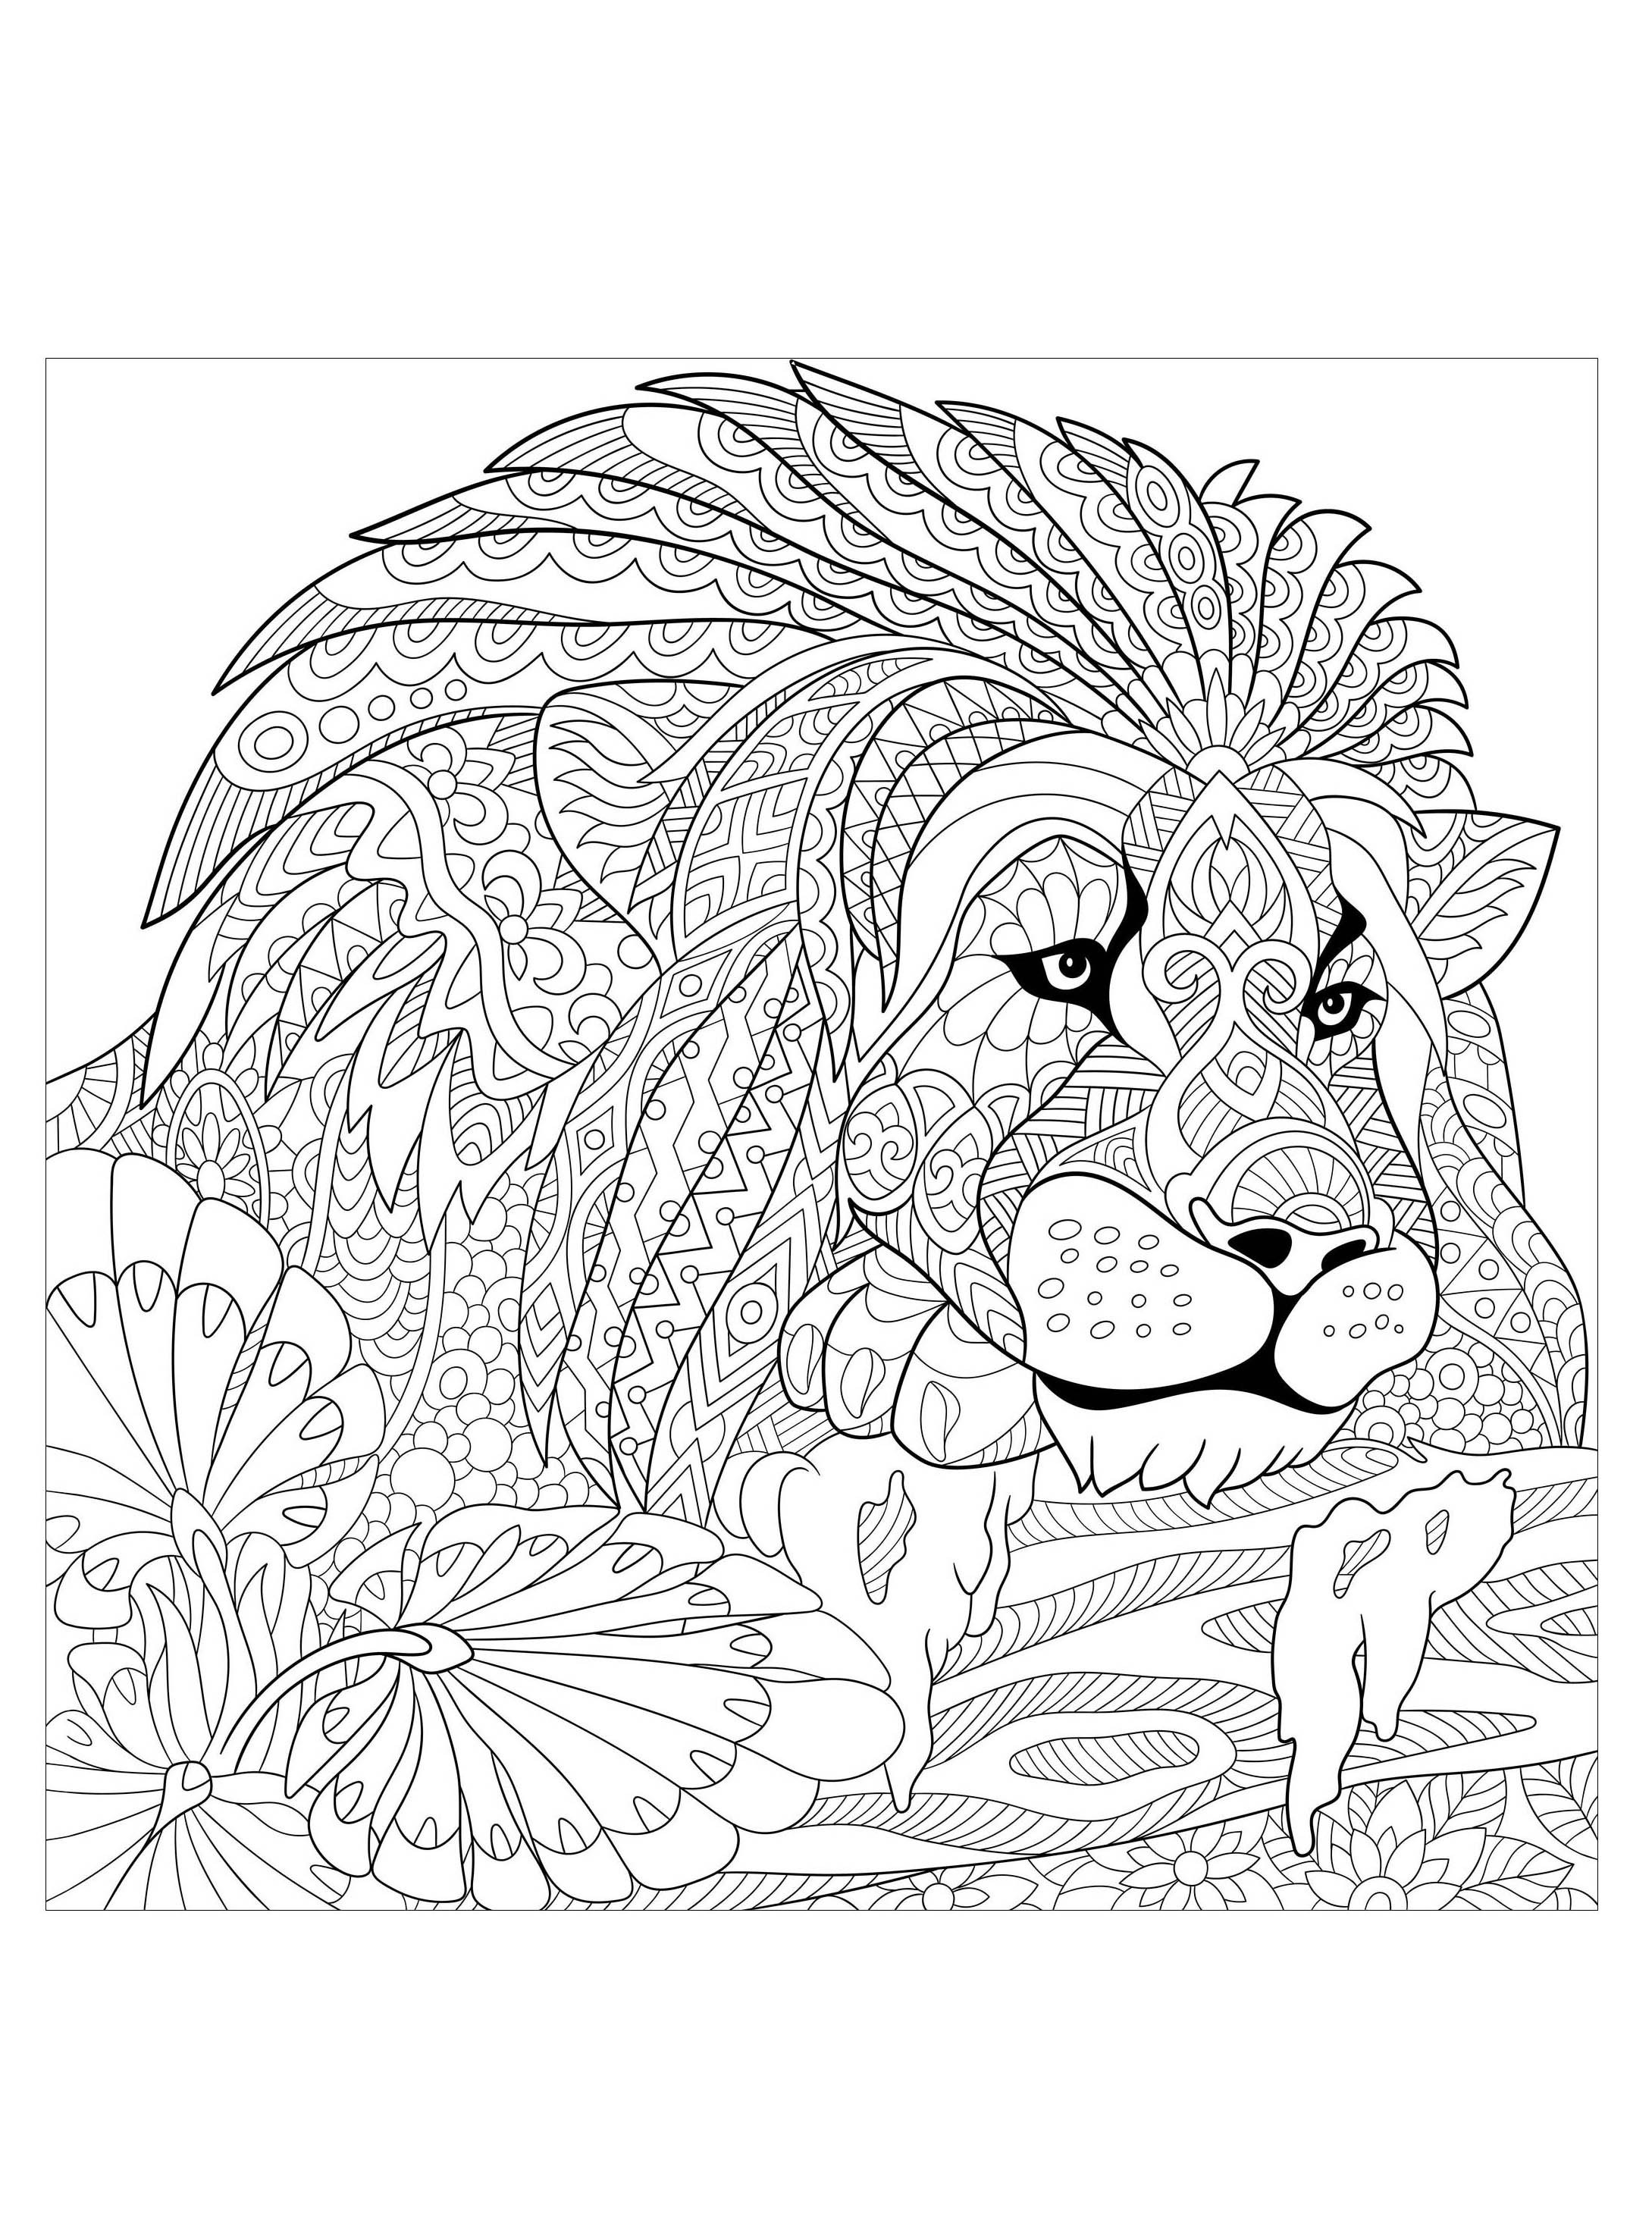 Desenhos para colorir de Leões para baixar, Artista : Sybirko   Fonte : 123rf